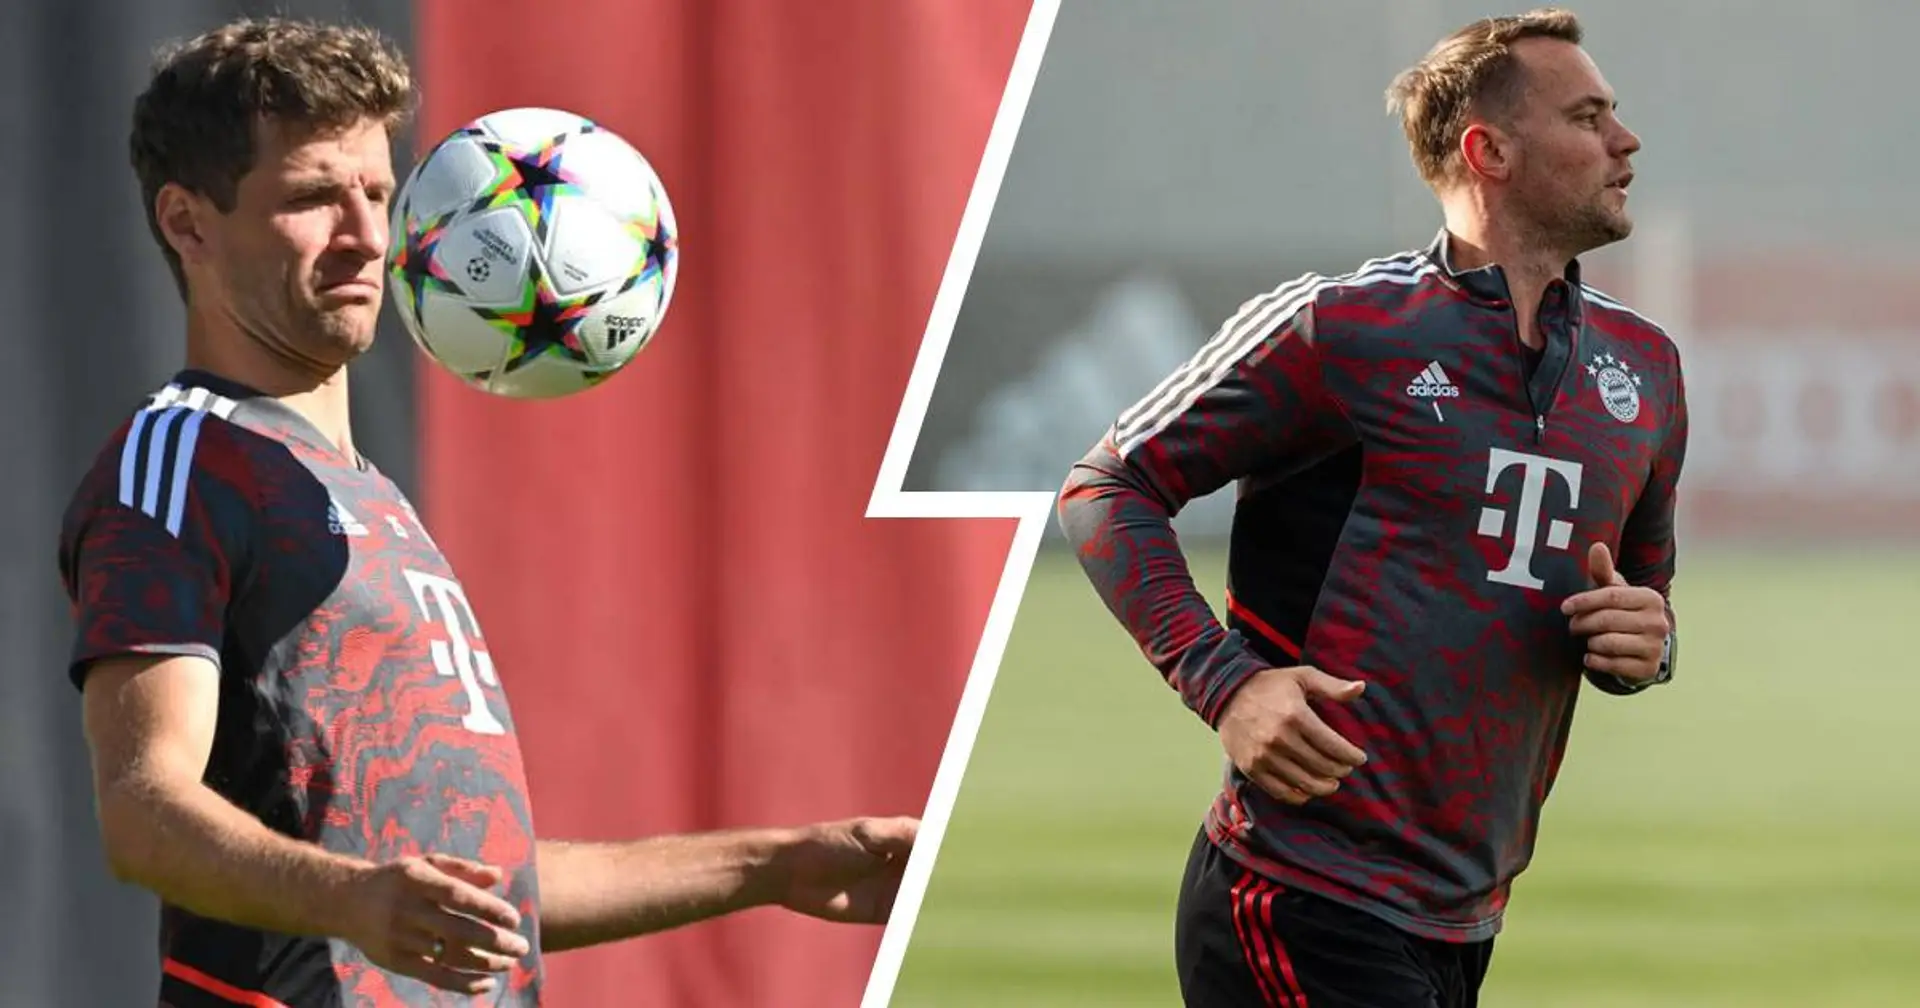 Müller arbeitet wieder mit dem Ball, Neuer trainiert weiter hinter zugezogenem Vorhang - kicker